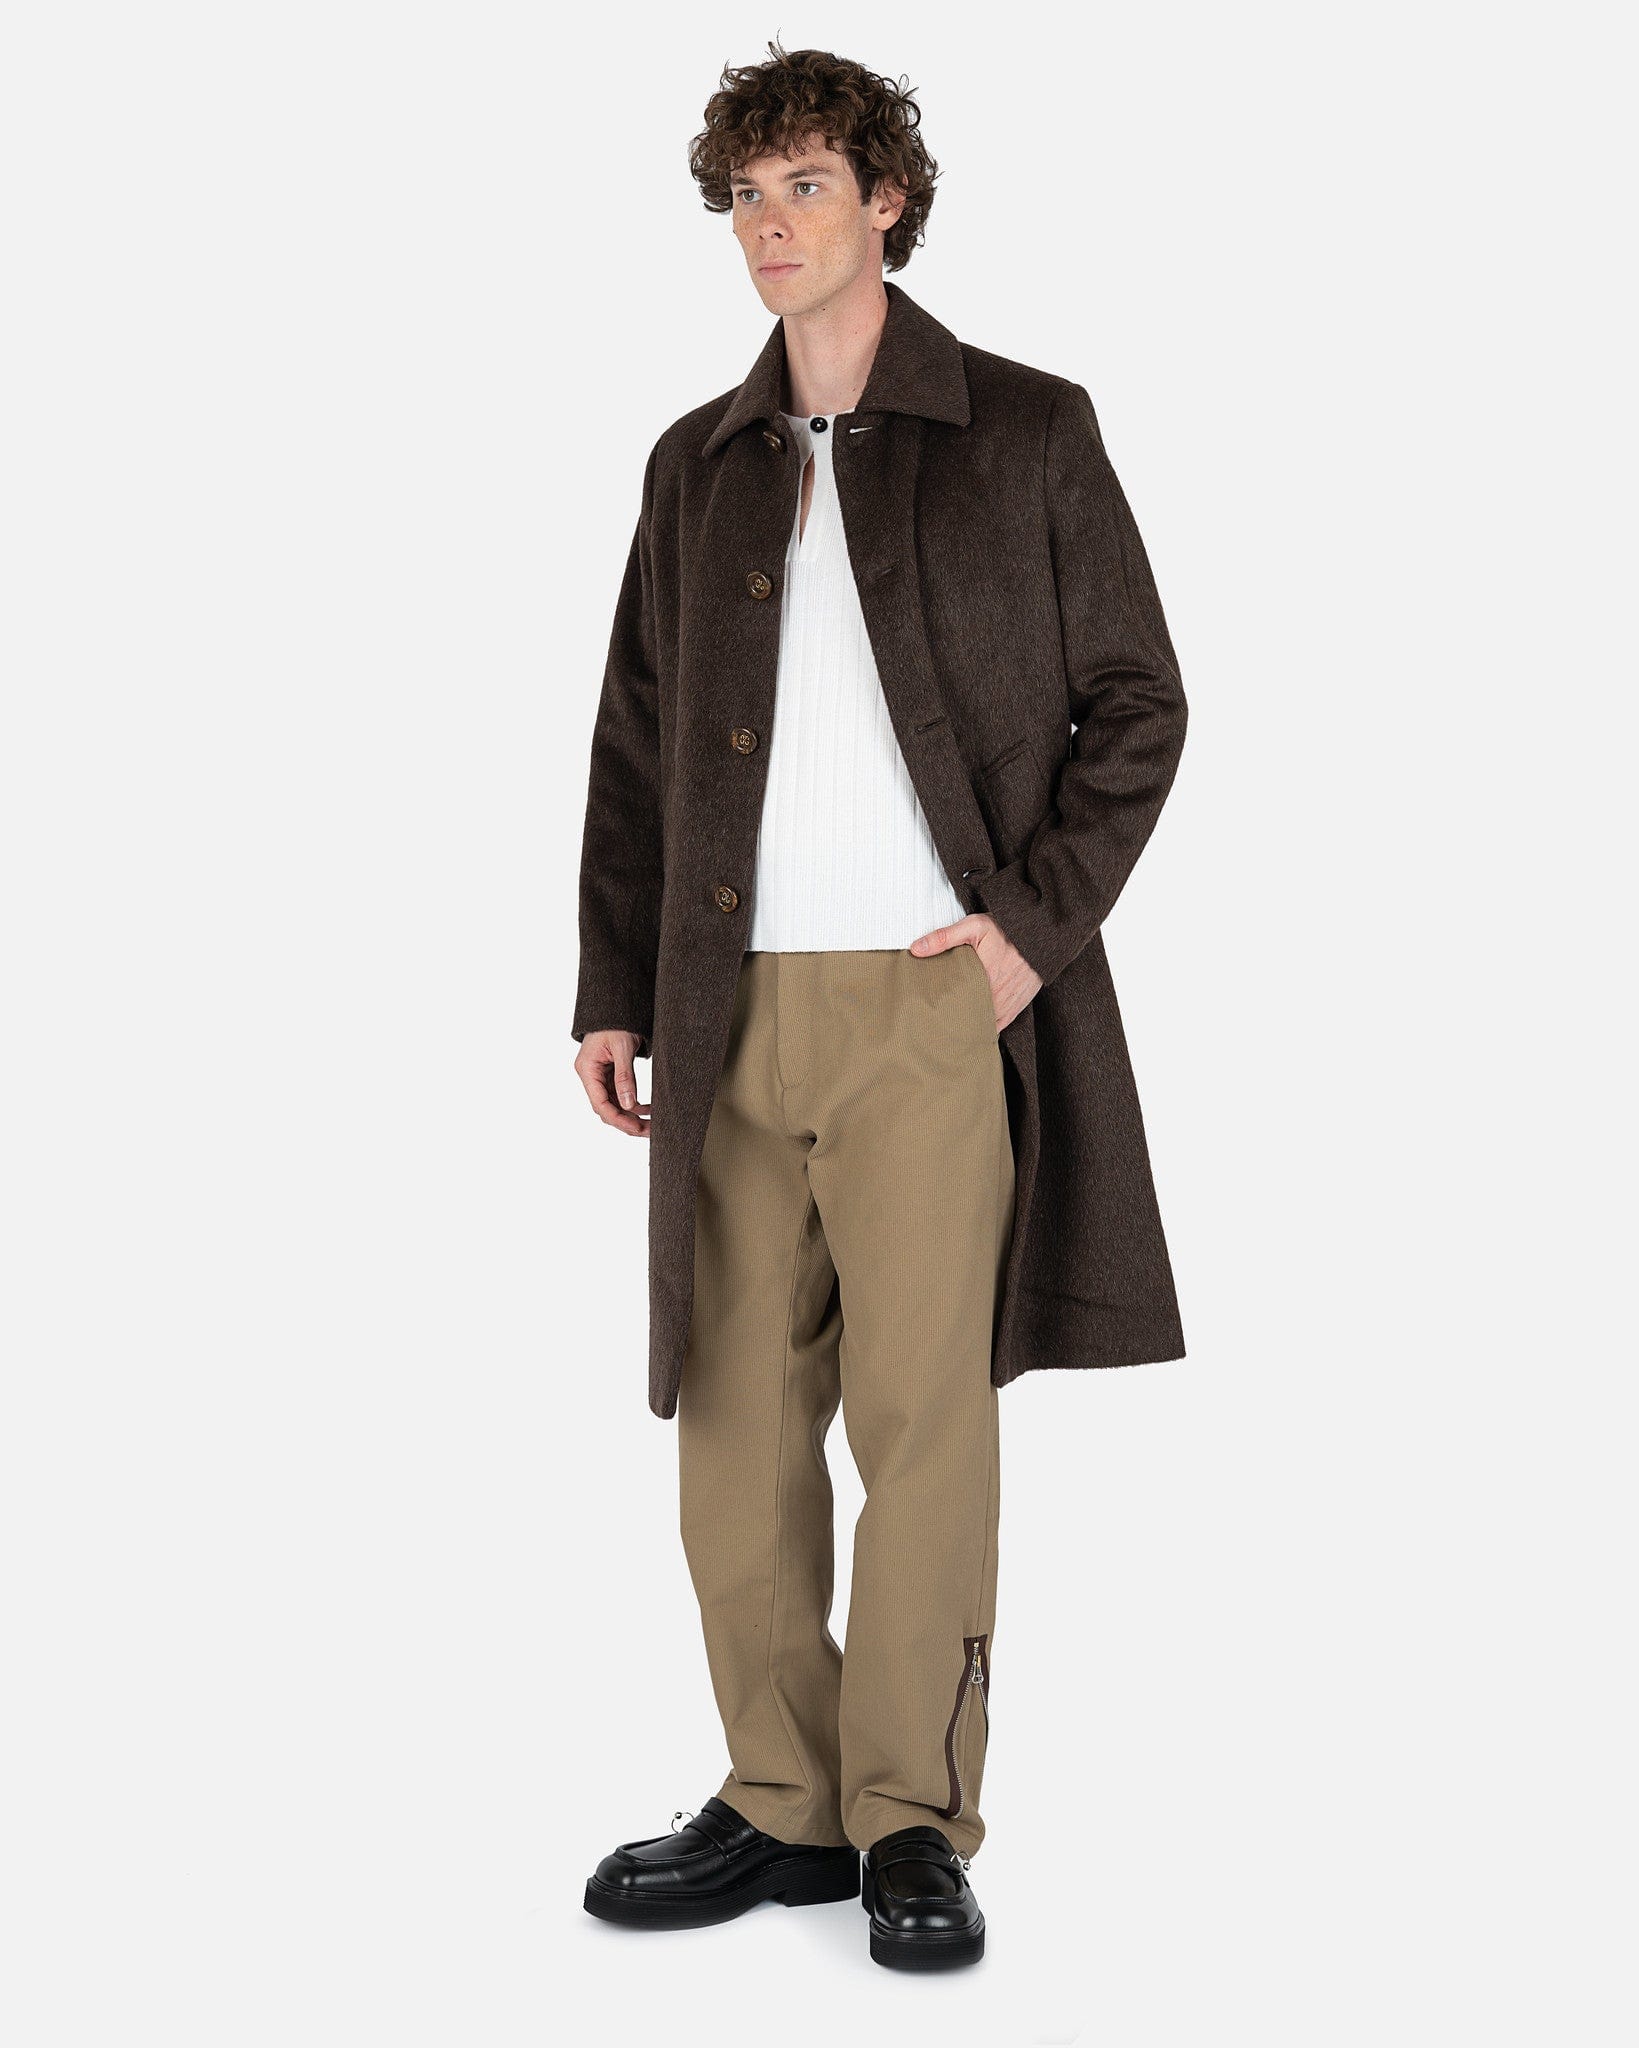 Esco Coat in Brown Mohair – SVRN